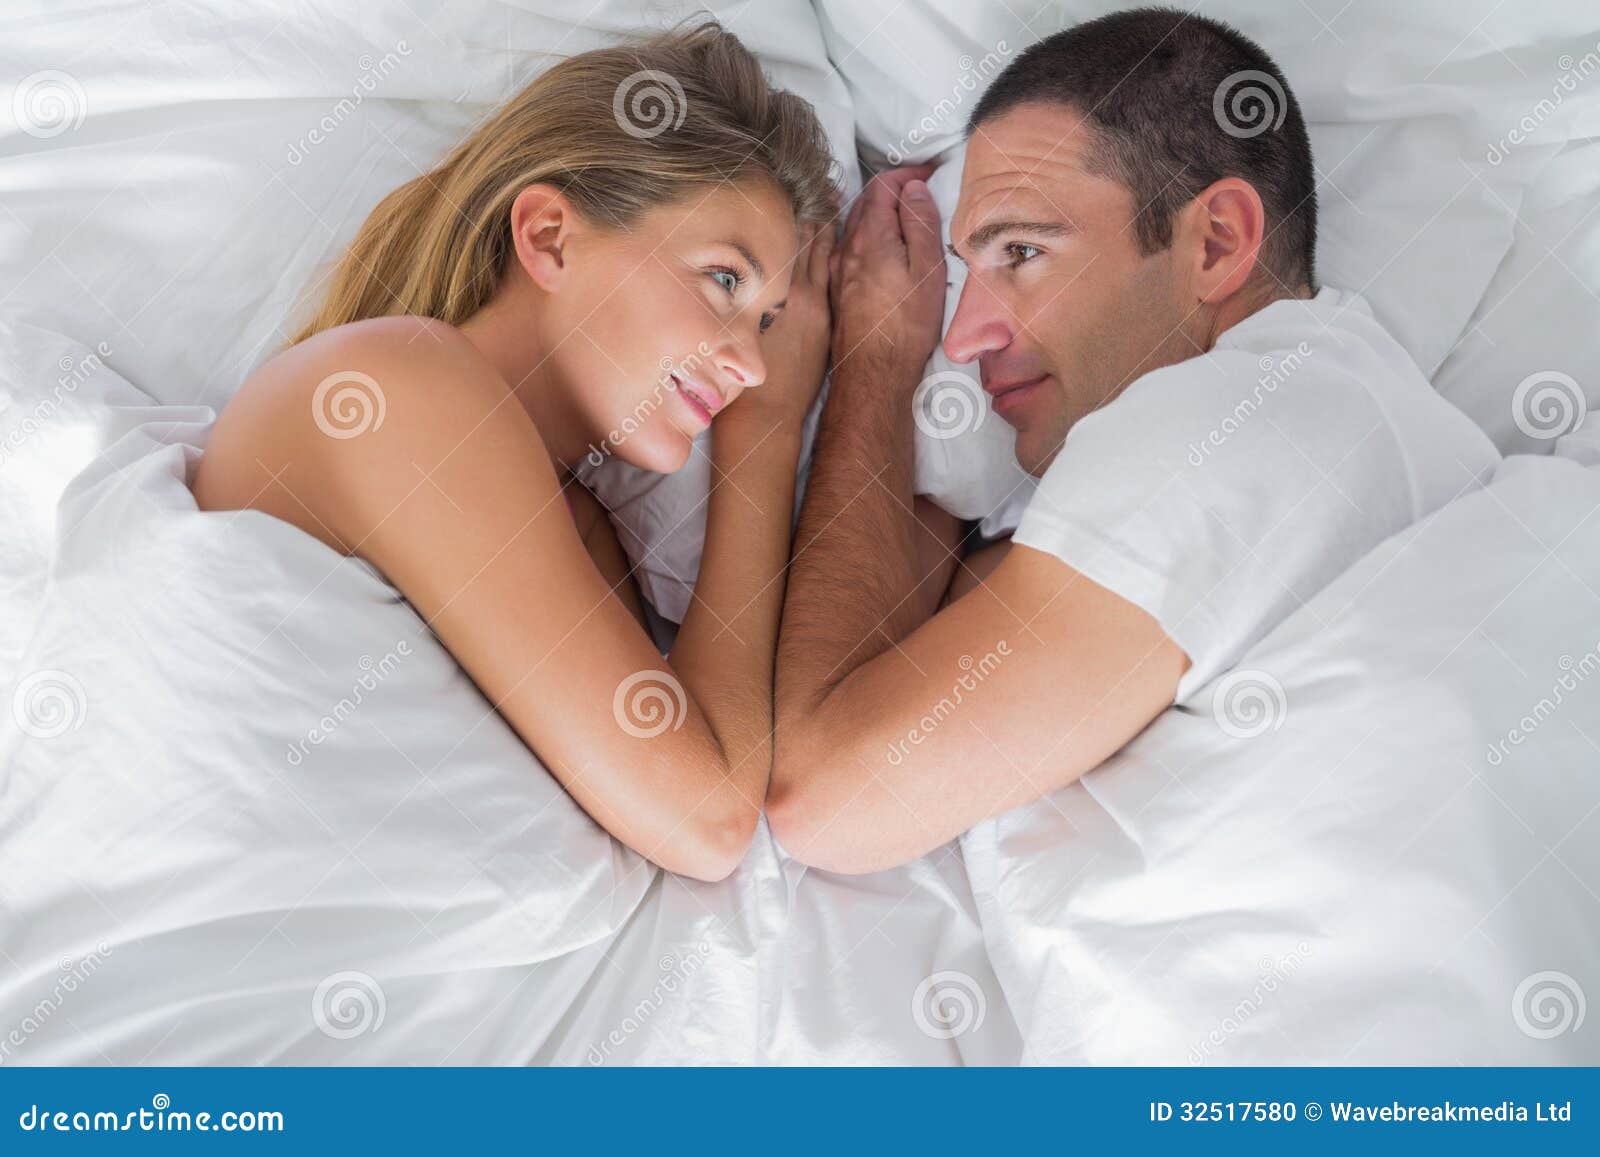 Лысый мужик трахает полногрудую даму на постели